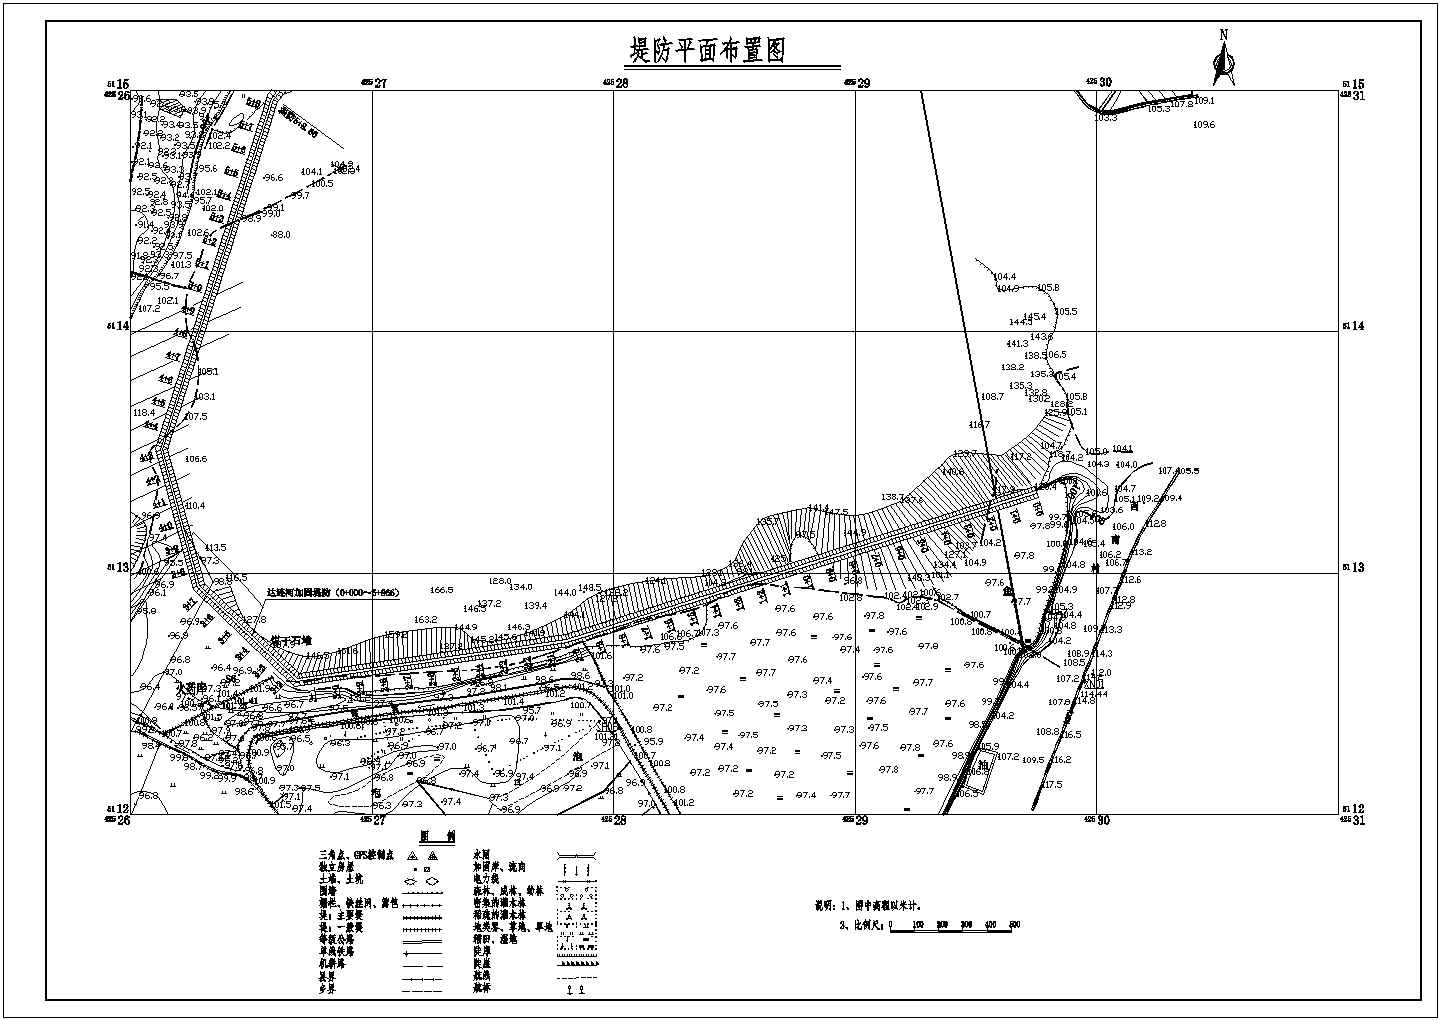 松花江干流依兰航电枢纽工程东部涝区西堤防完整图纸